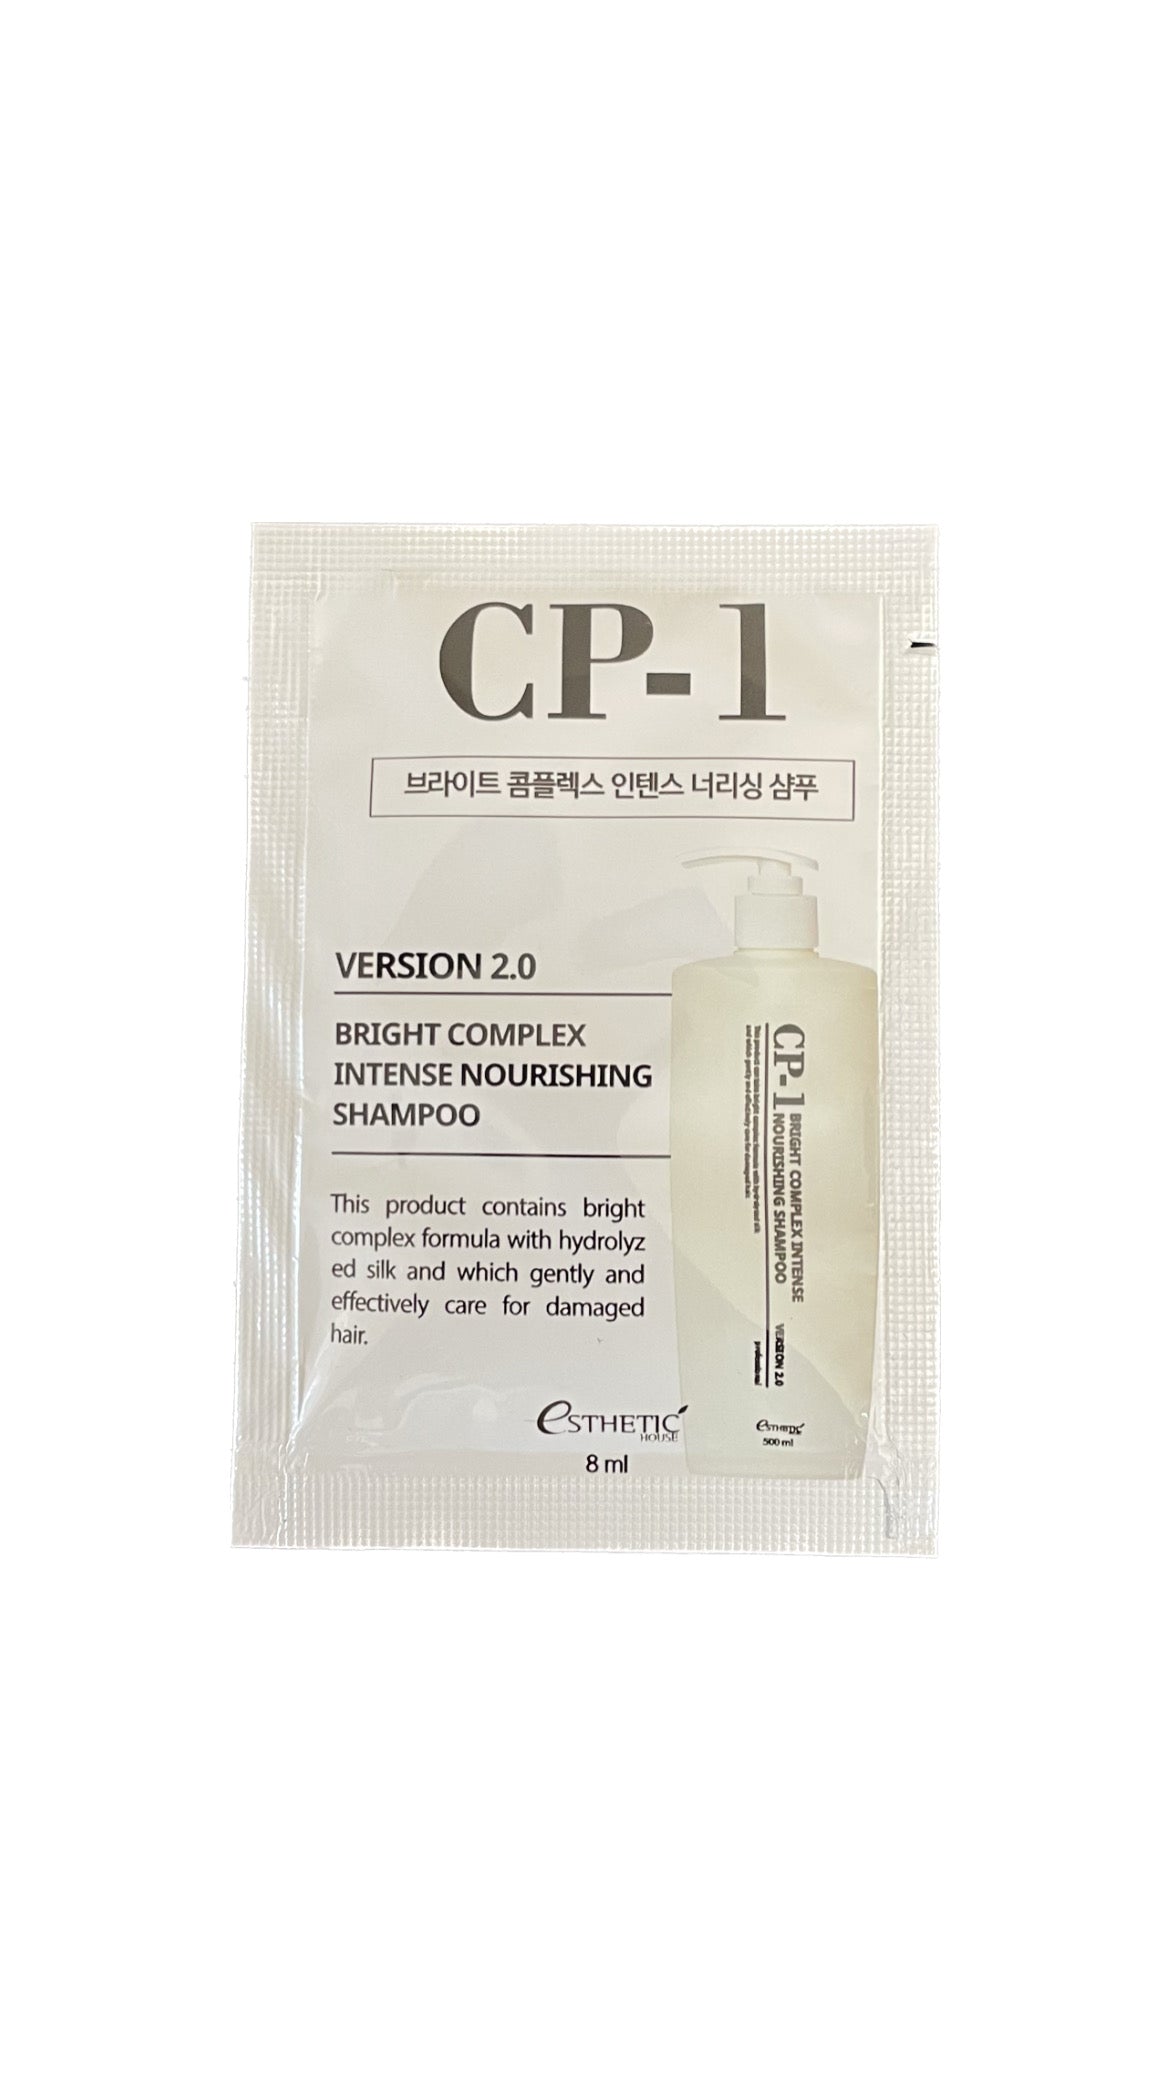 CP-1 Bright Complex Intense Nourishing shampoo tester